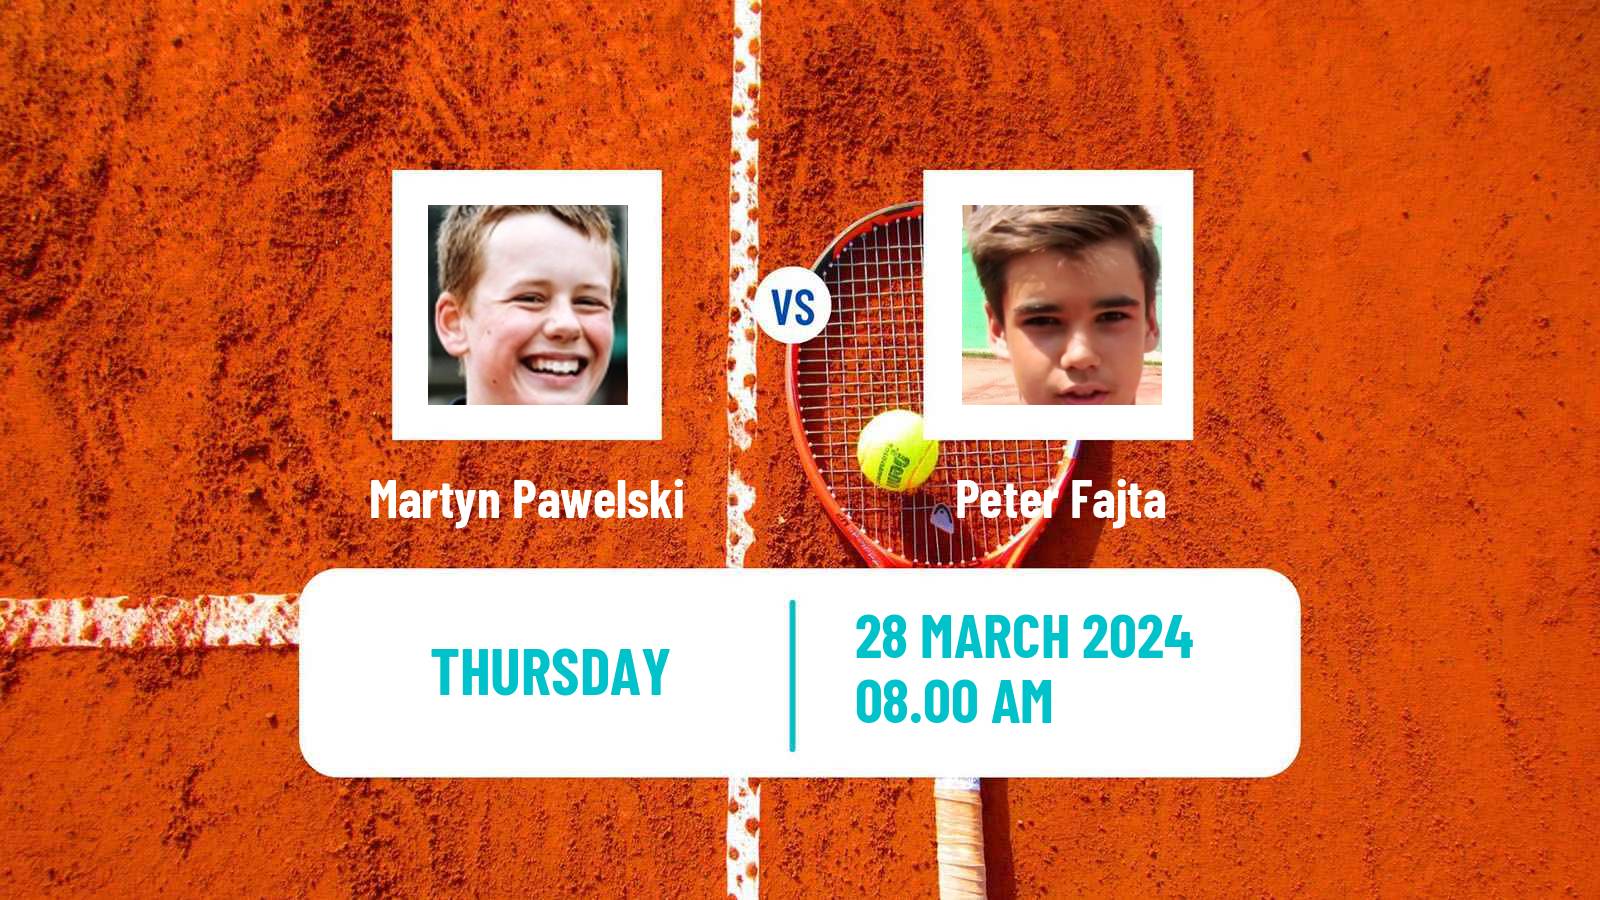 Tennis ITF M25 Trnava Men Martyn Pawelski - Peter Fajta